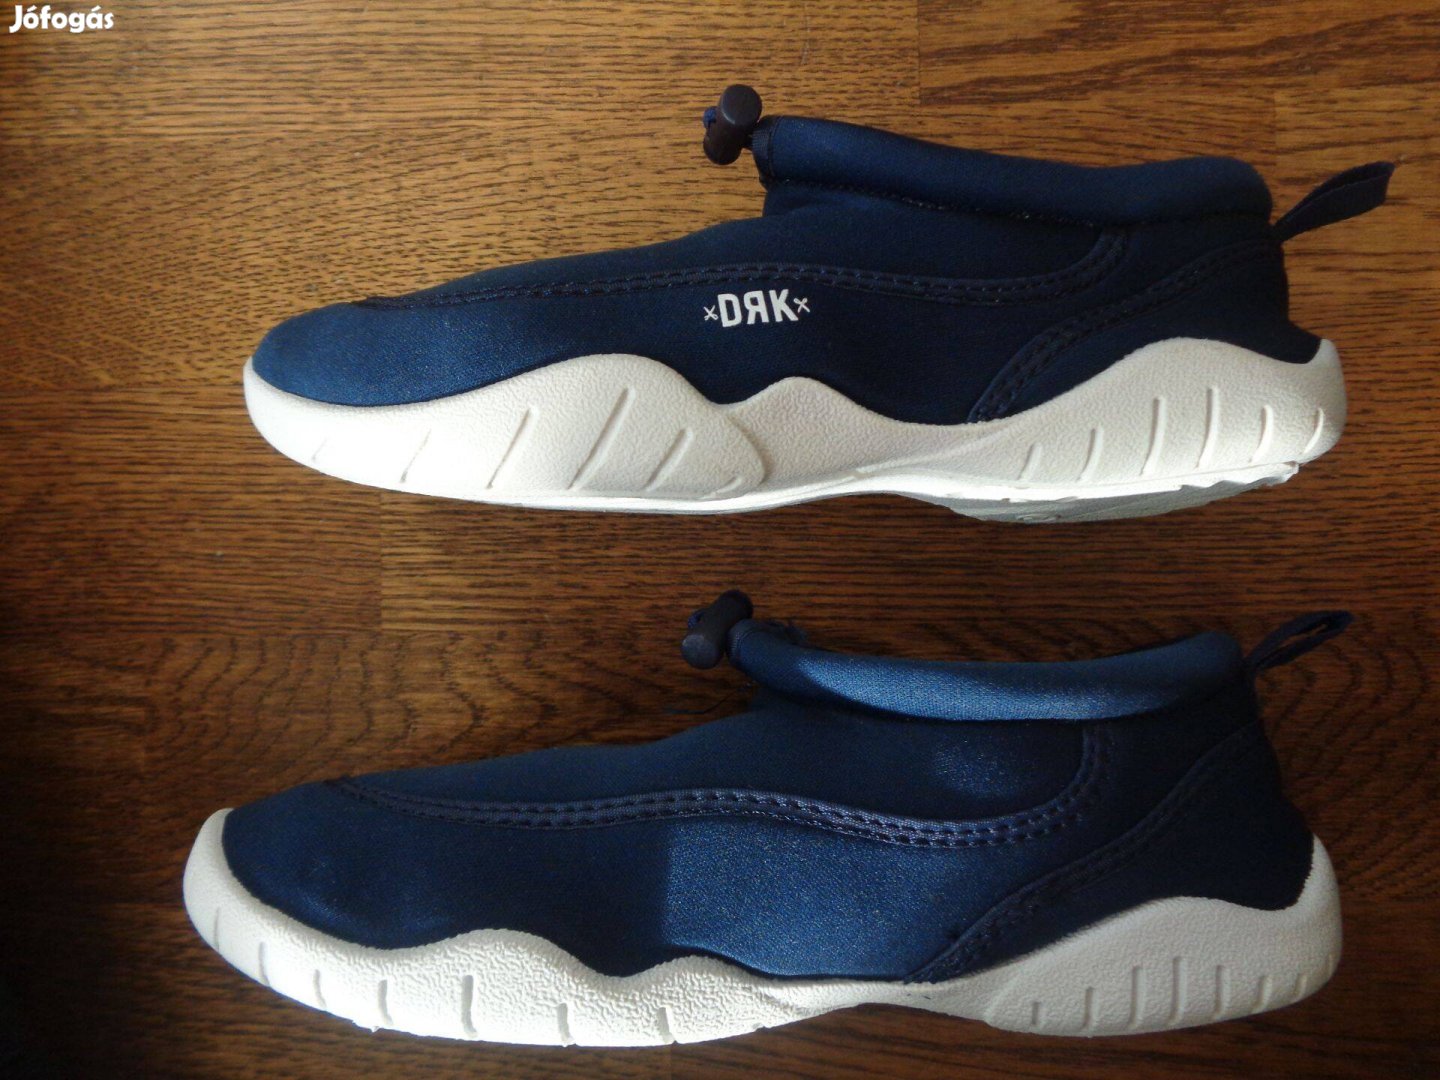 Új eredeti Dorko DRK Aquatic 32-es 32 gyerekcipő utcai cipő 2 színben